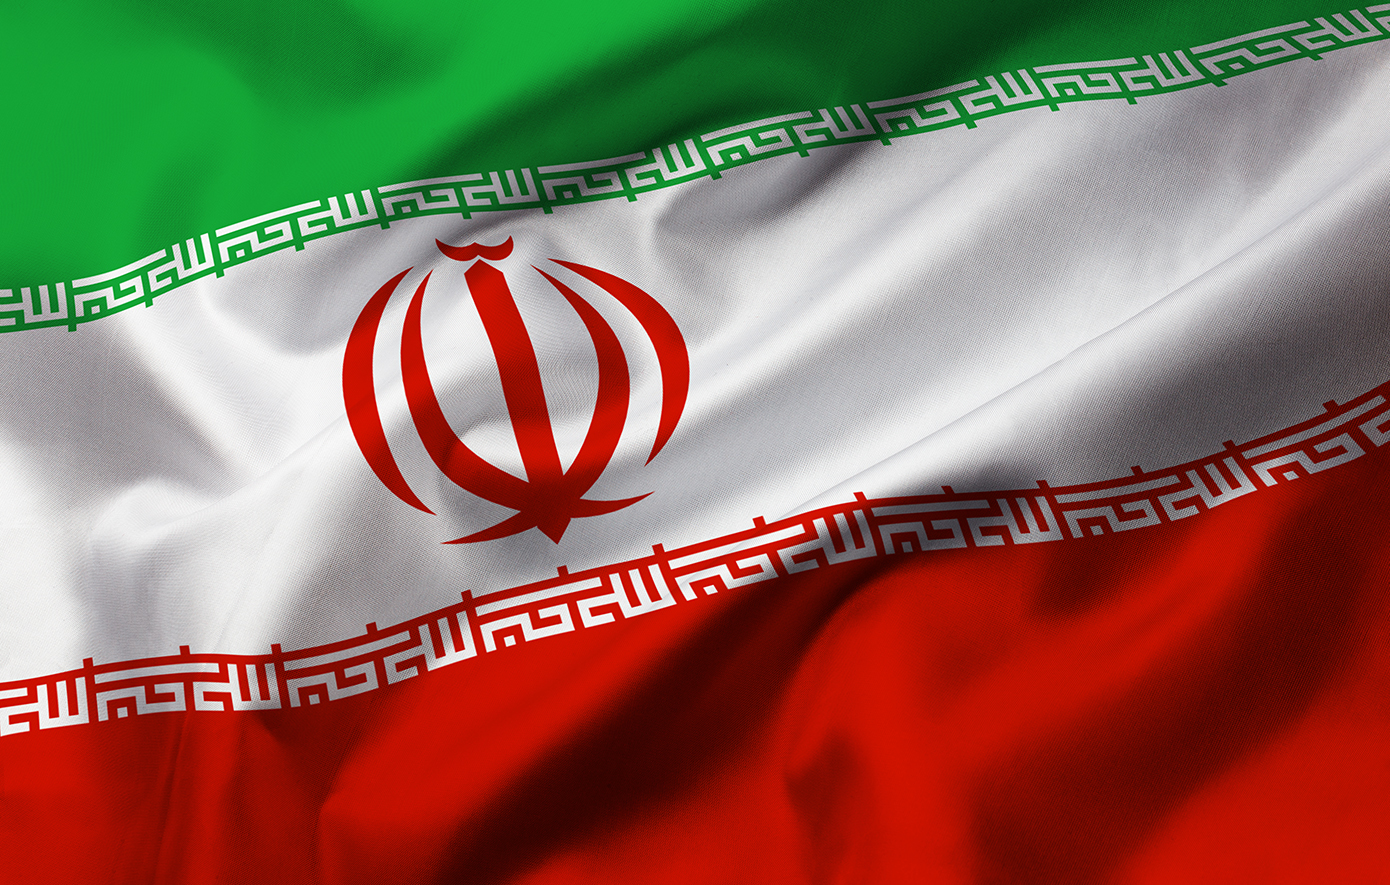 Ιράν: Περίπου στο 40% το ποσοστό συμμετοχής στις προεδρικές εκλογές, το χαμηλότερο από το 1979